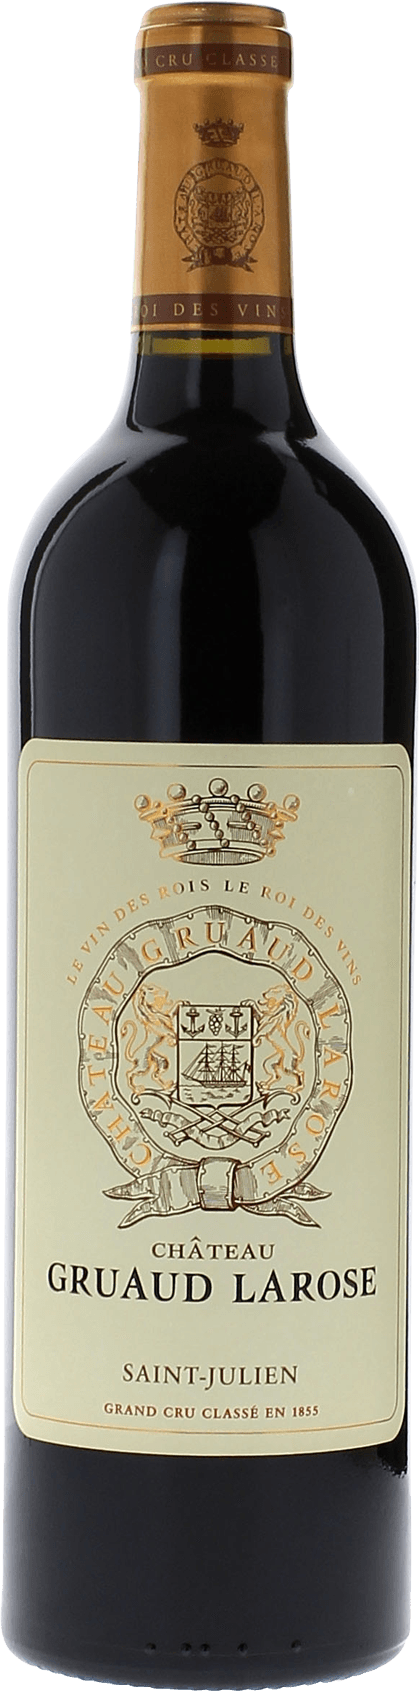 Gruaud larose 2015 2me Grand cru class Saint-Julien, Bordeaux rouge